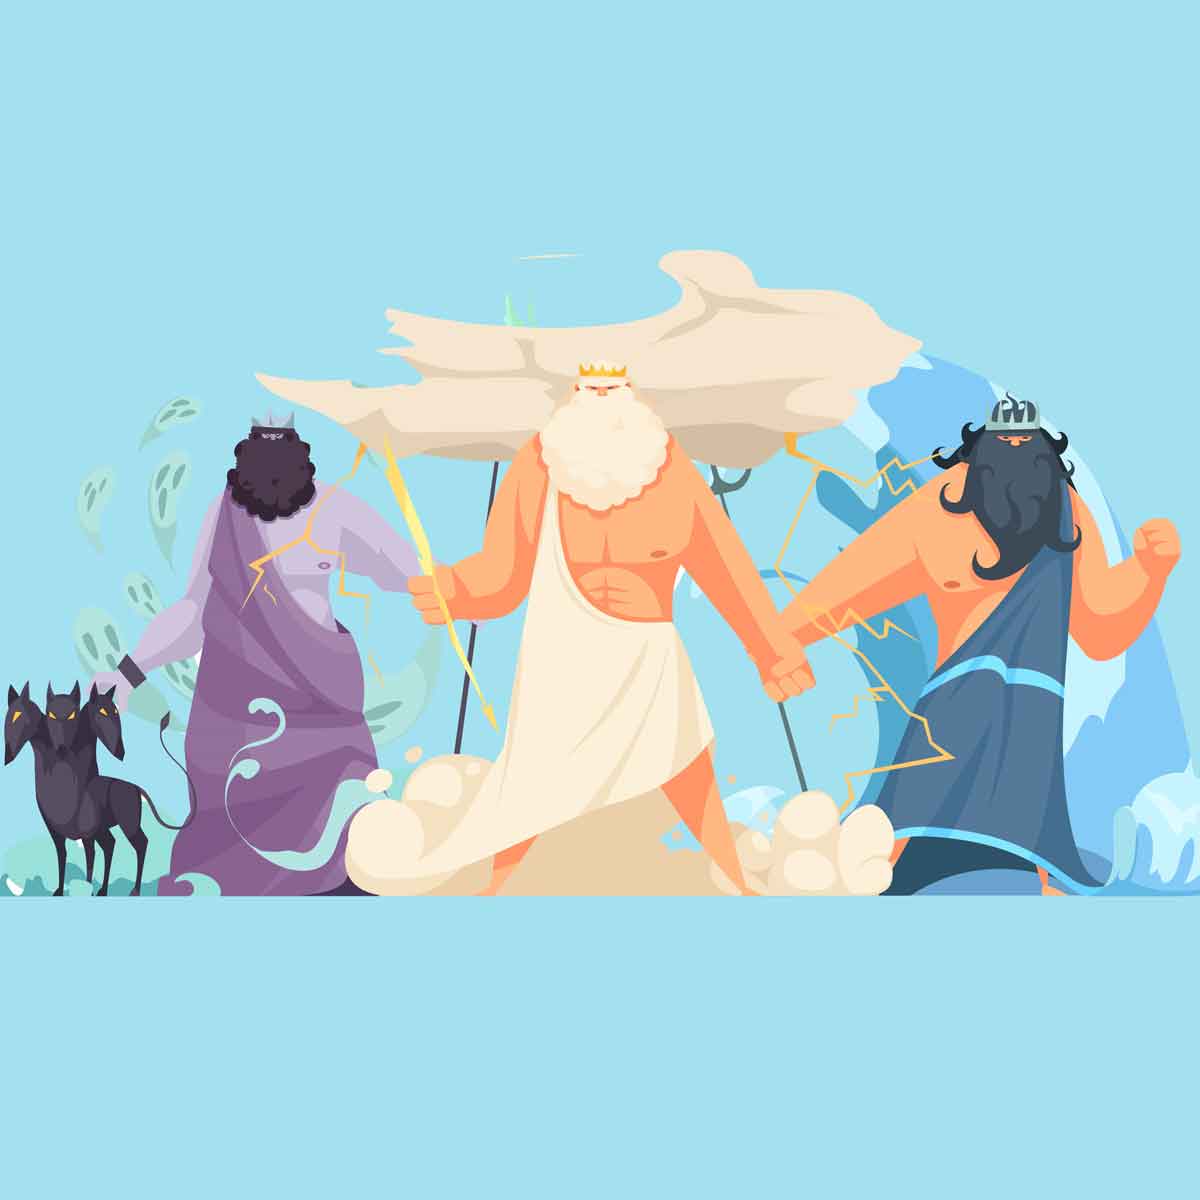 Los dioses griegos y los titanes más importantes de la mitología griega.